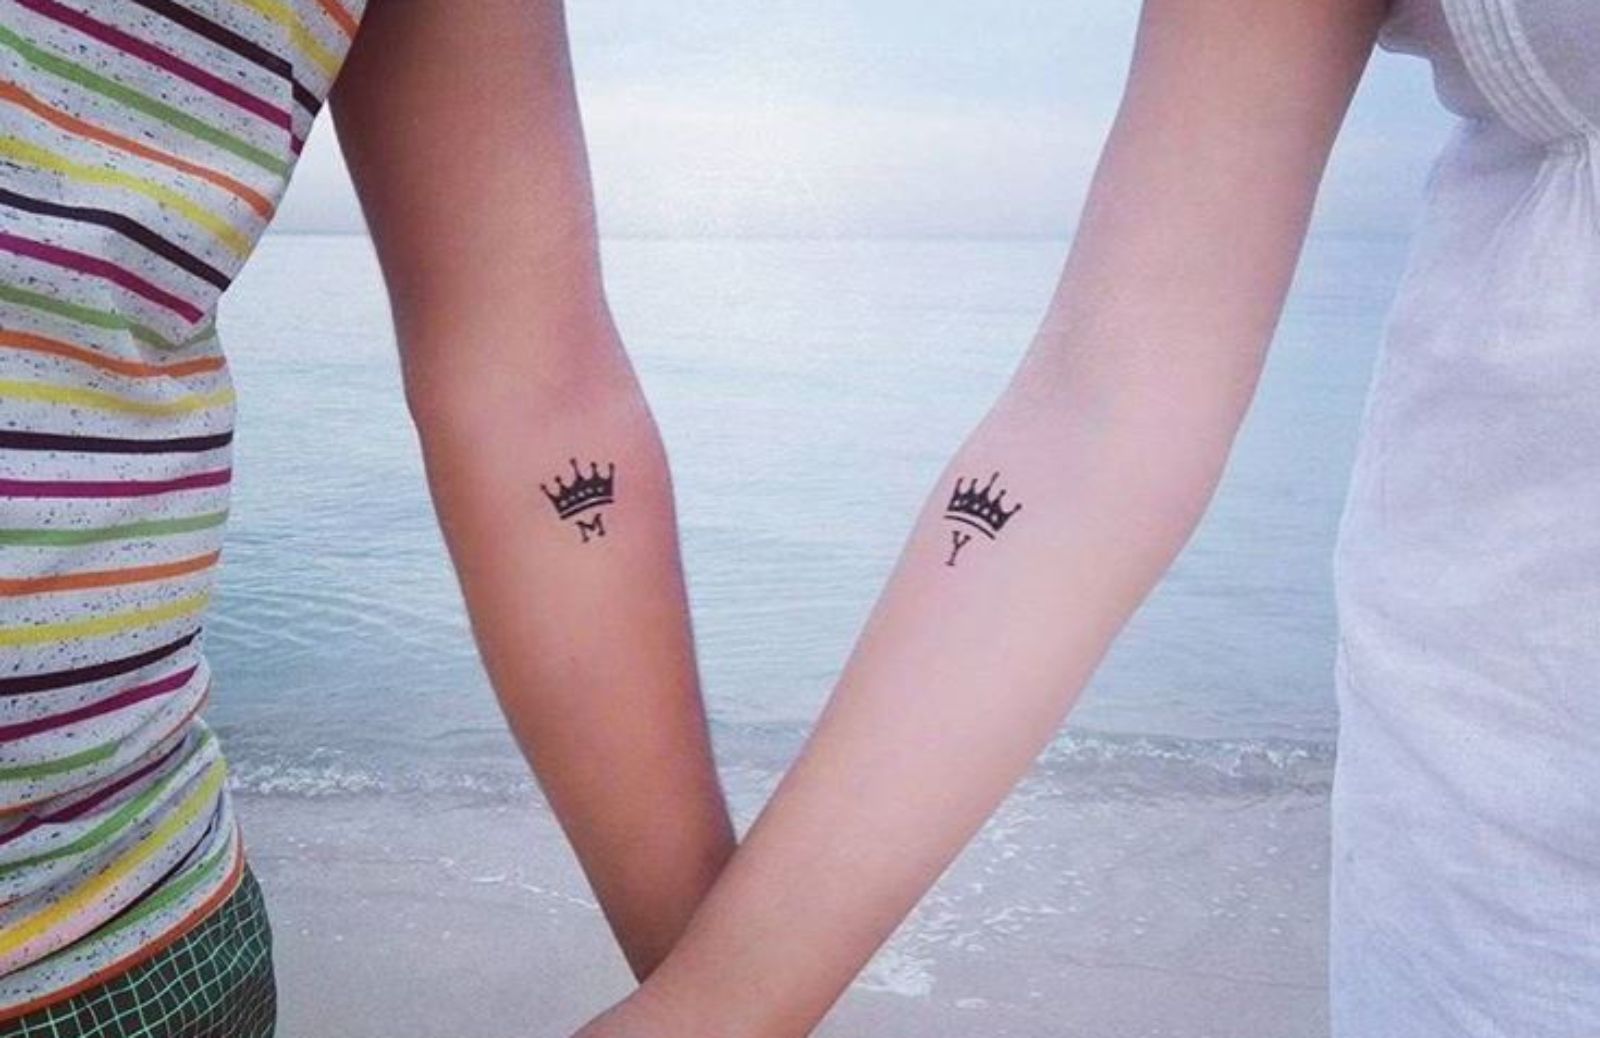 Tatuaggi d'amore piccoli: ecco alcune idee da copiare